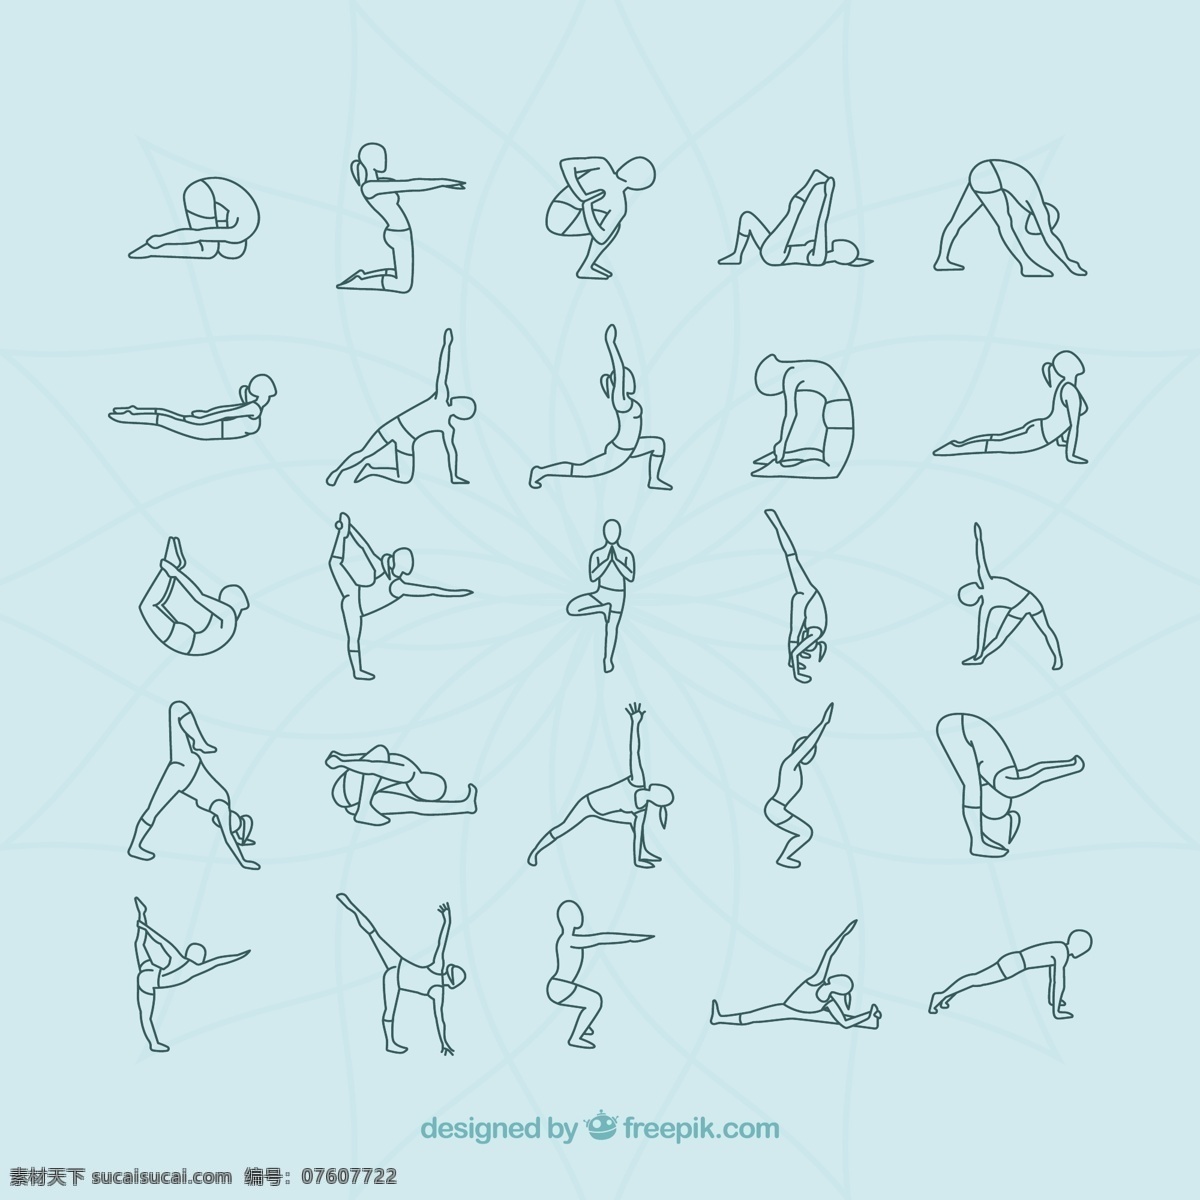 瑜伽姿势 运动 健身 健康 瑜伽 能源 平衡 冥想 普拉提 放松 品种繁多 姿态 动感 姿势品种 图标 高清 源文件